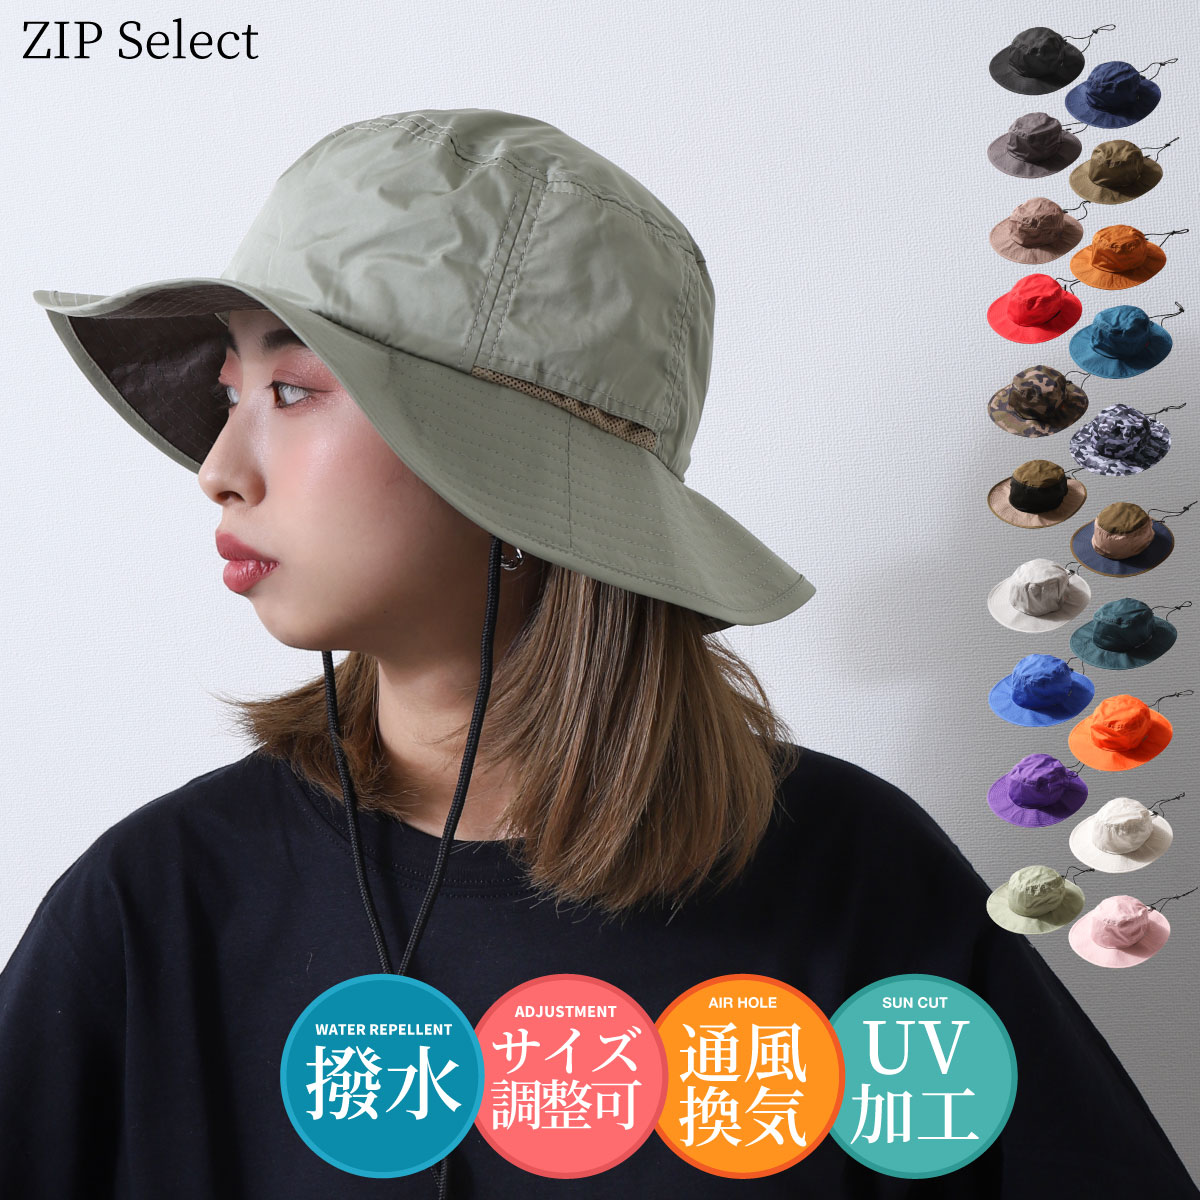  市場】ハット メンズ バケットハット 帽子 ロゴ刺繍 ワンポイント ヘルスニット Healthknit ZIP ジップ (291-4092) :  ZIP FIVE  市場店